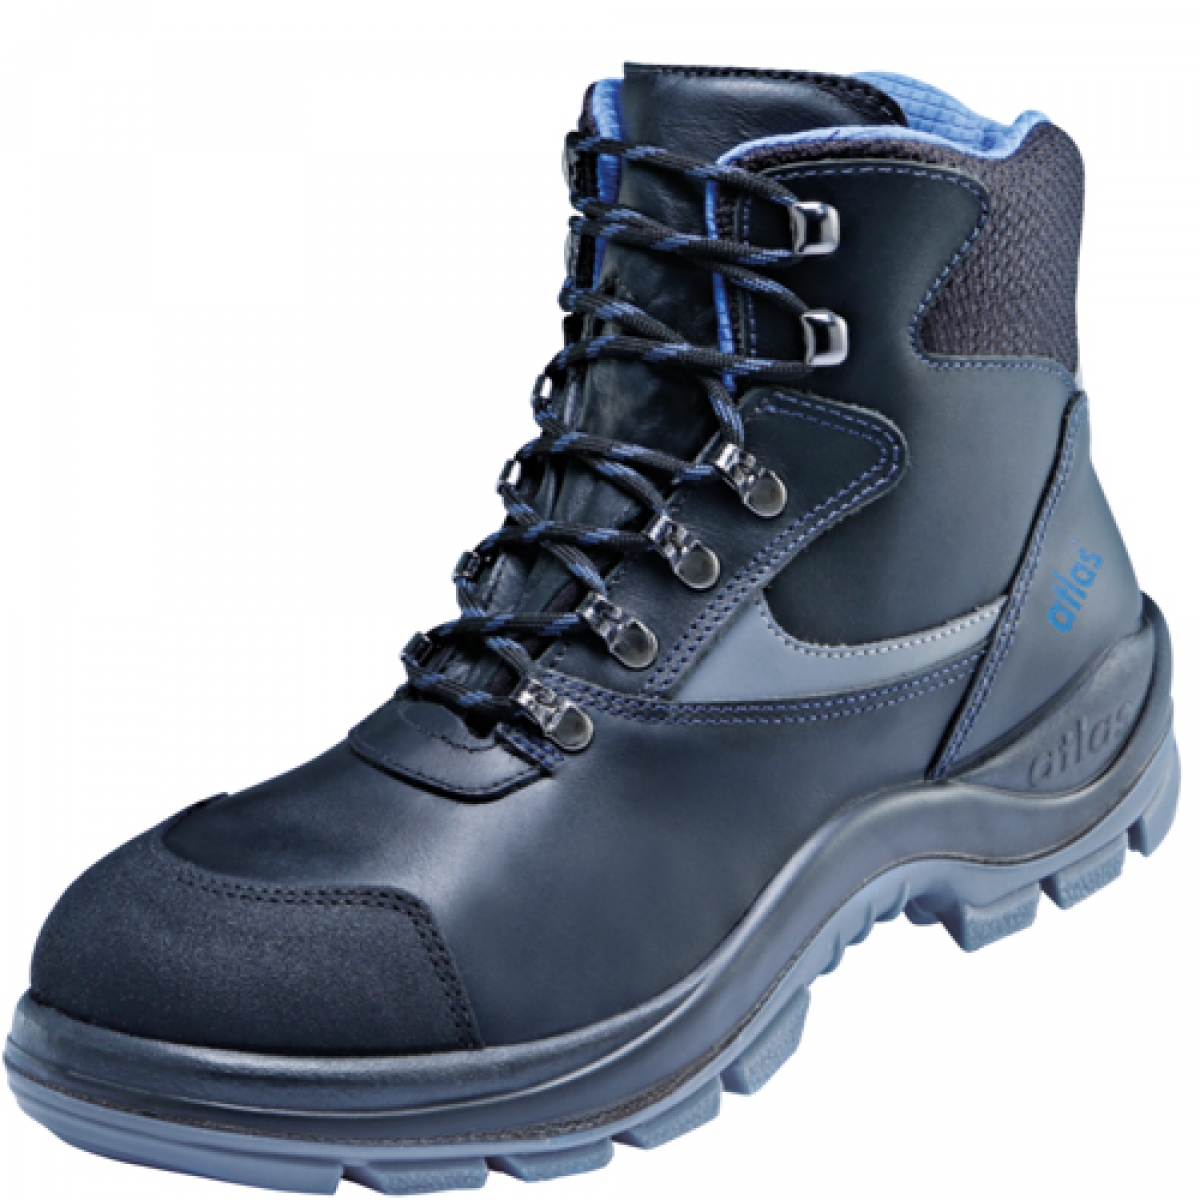 Atlas-Footwear, S3 Arbeits-Berufs-Sicherheits-Schuhe, Hochschuhe, ERGO-MED DUO 737, Weite: 14, schwarz